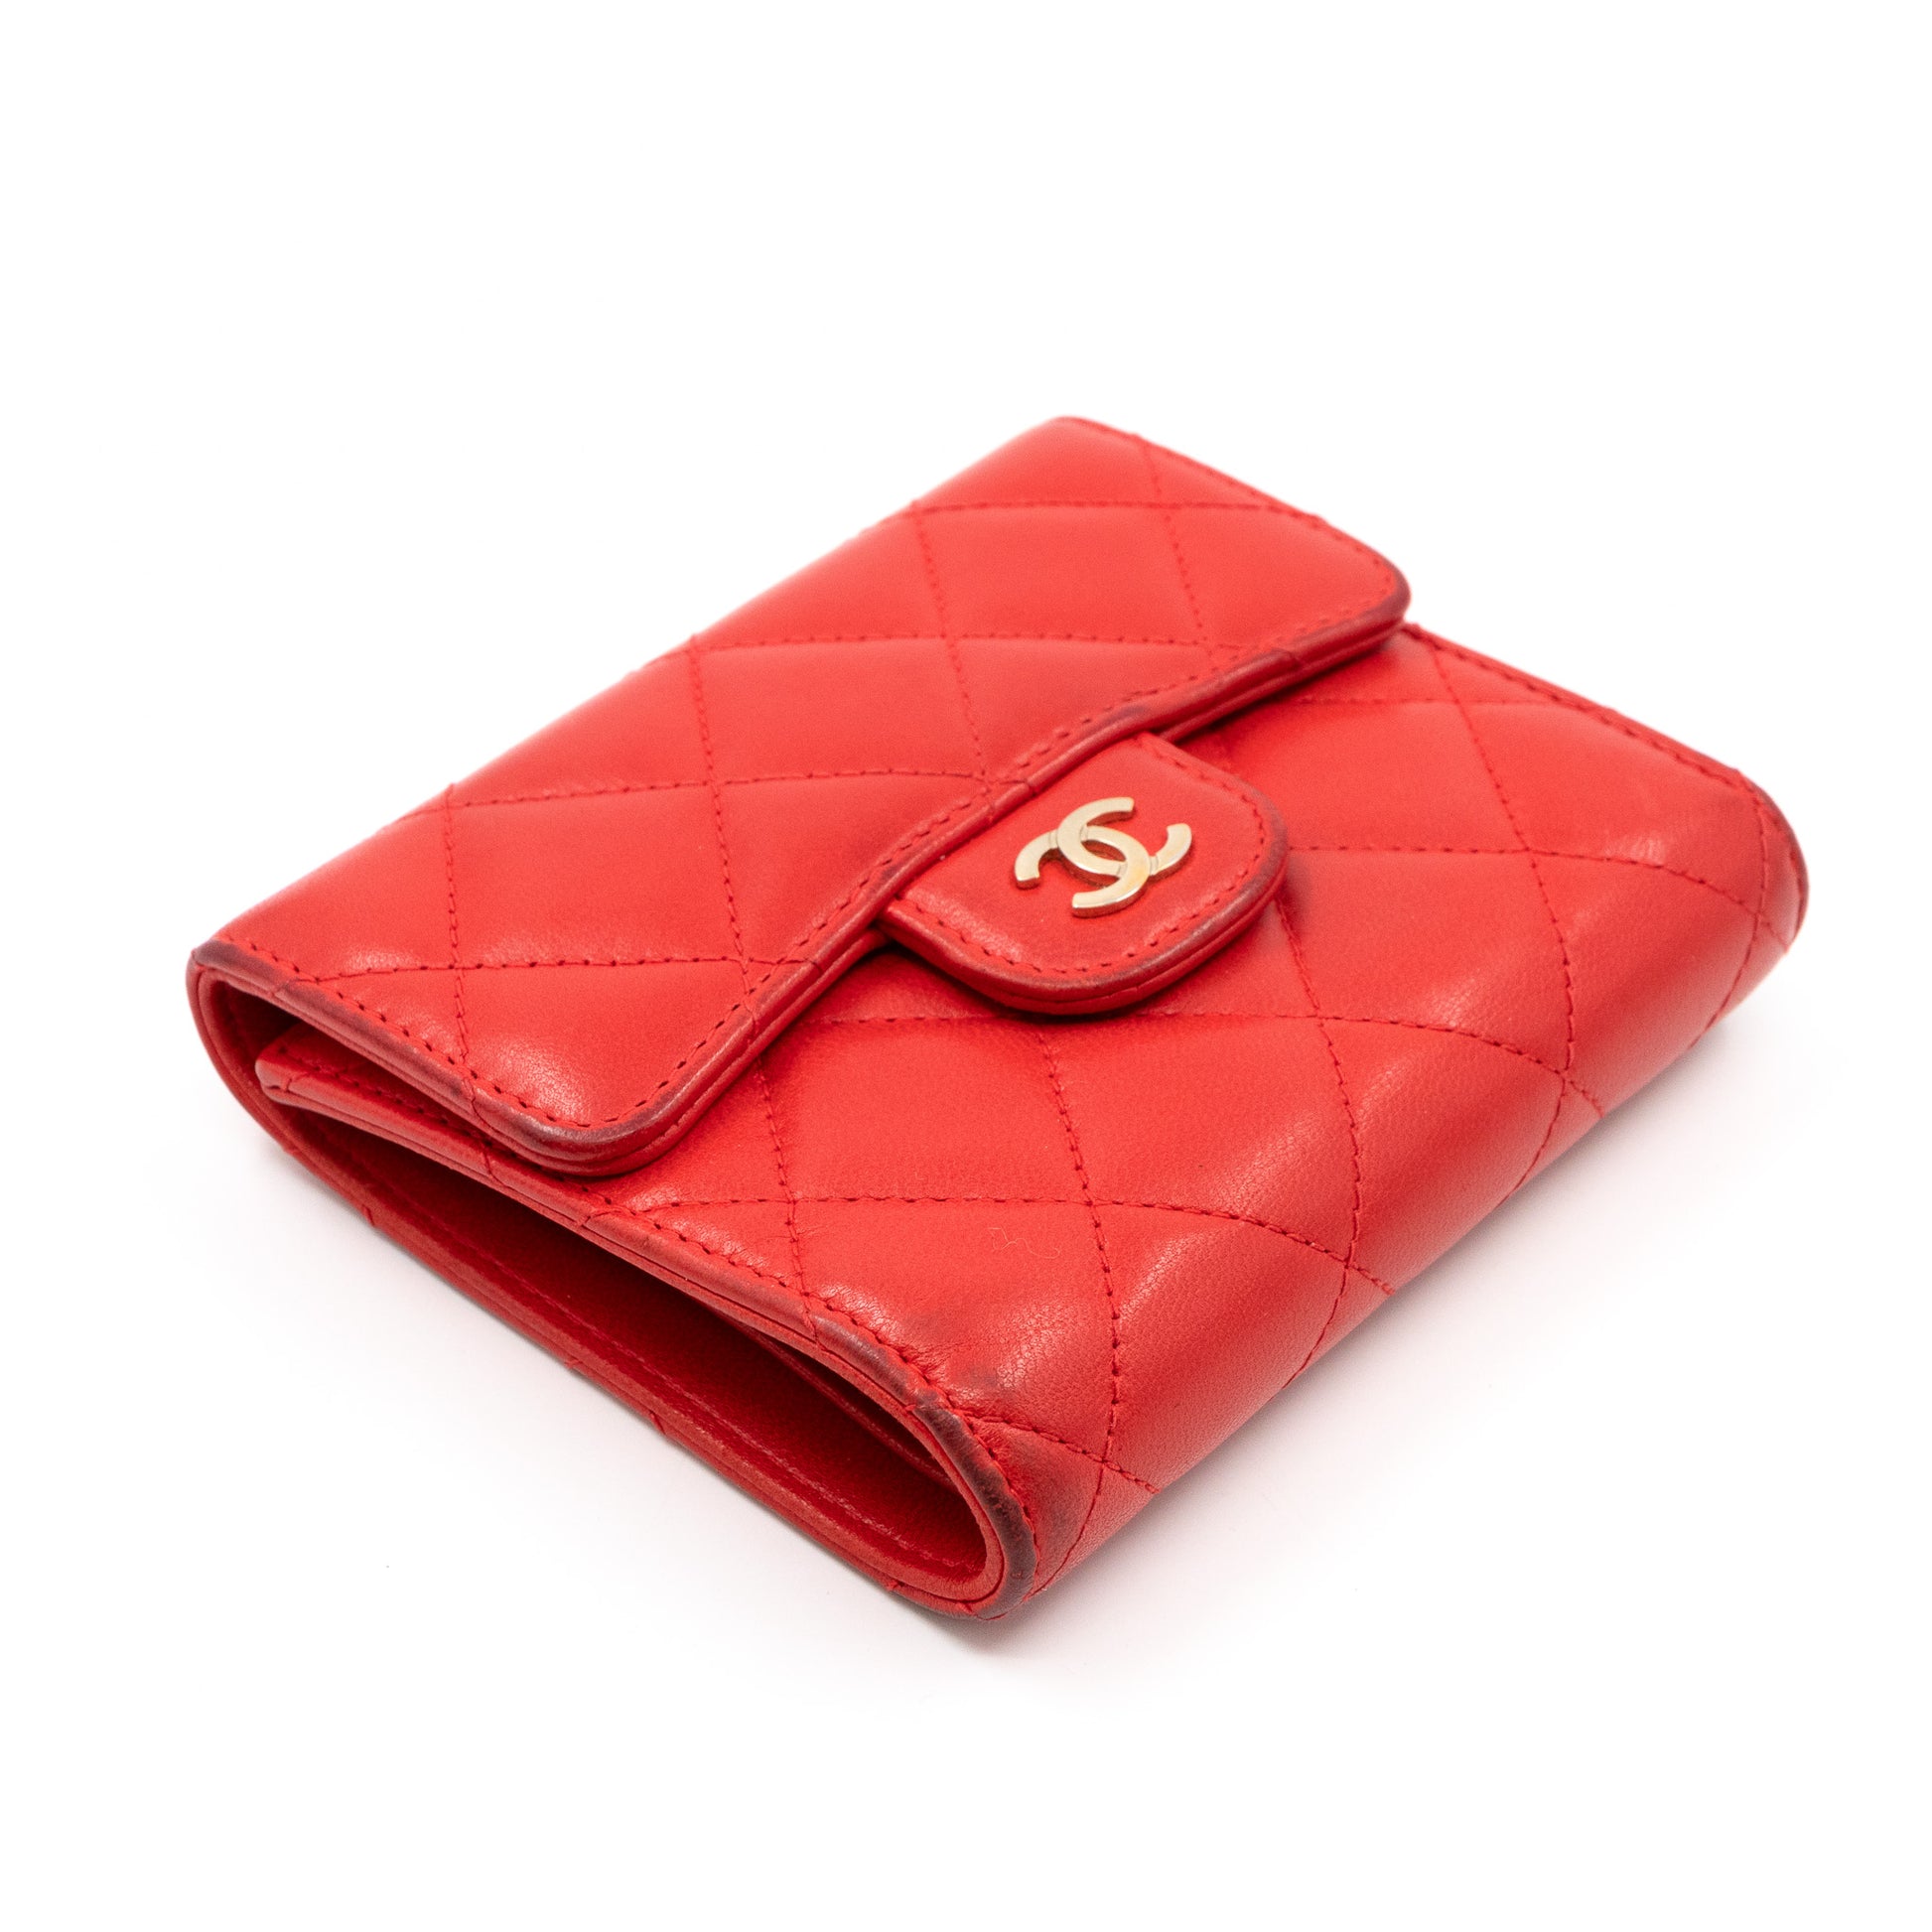 Chanel Small Flap Wallet Red Ap1789 Lambskin